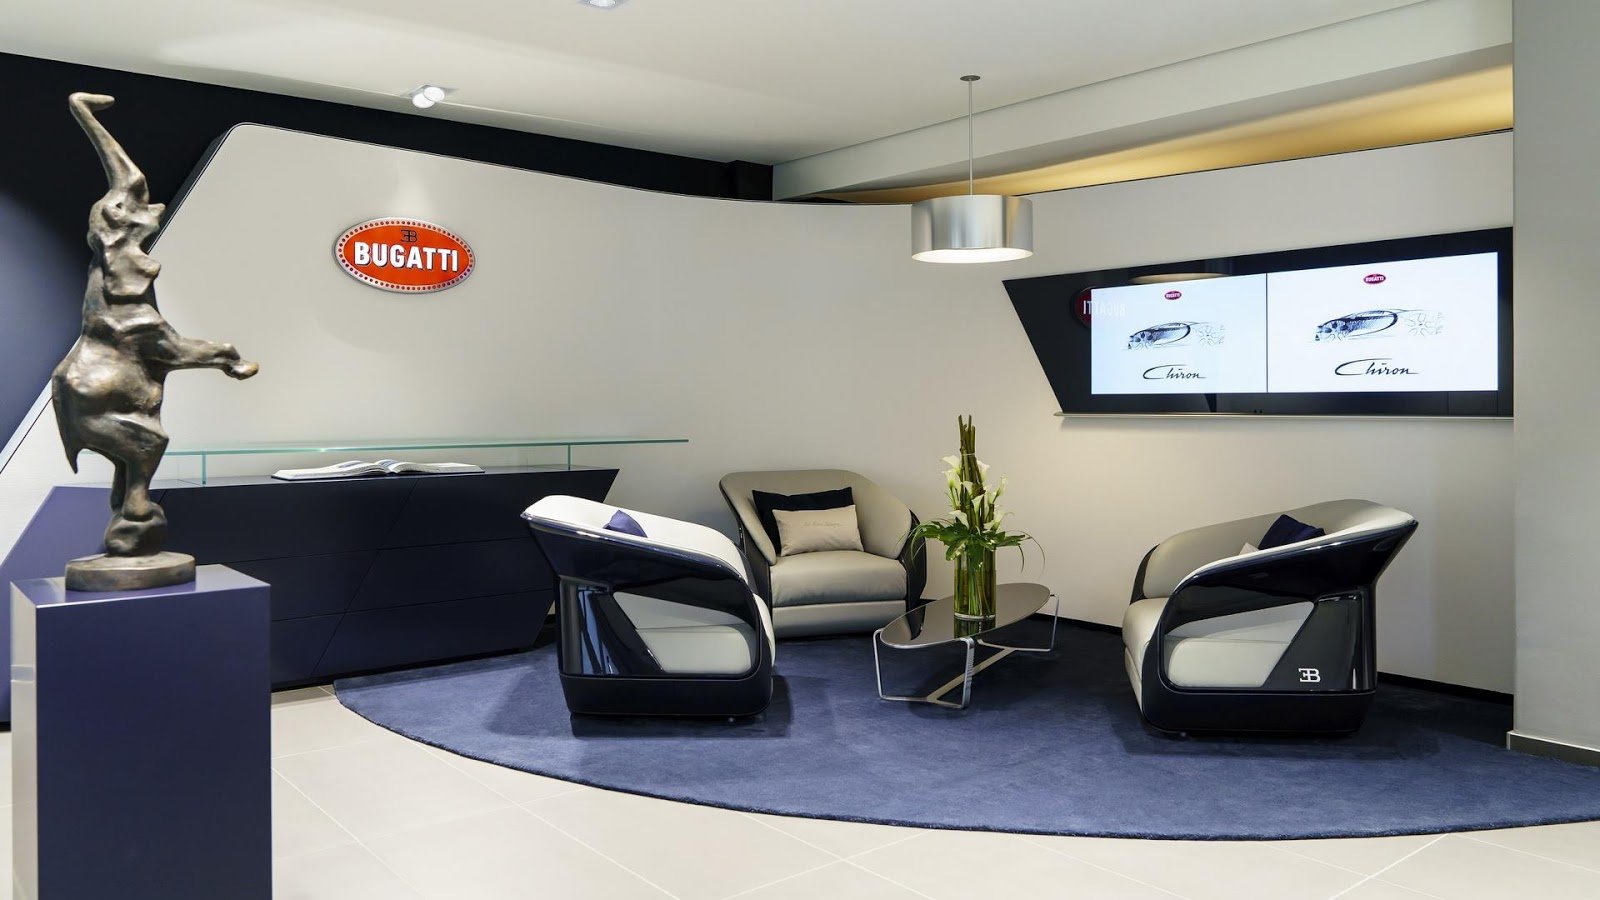 O Bugatti Chiron je v Německu ohromná zájem, Bugatti zde dokonce otevřela nový Showroom